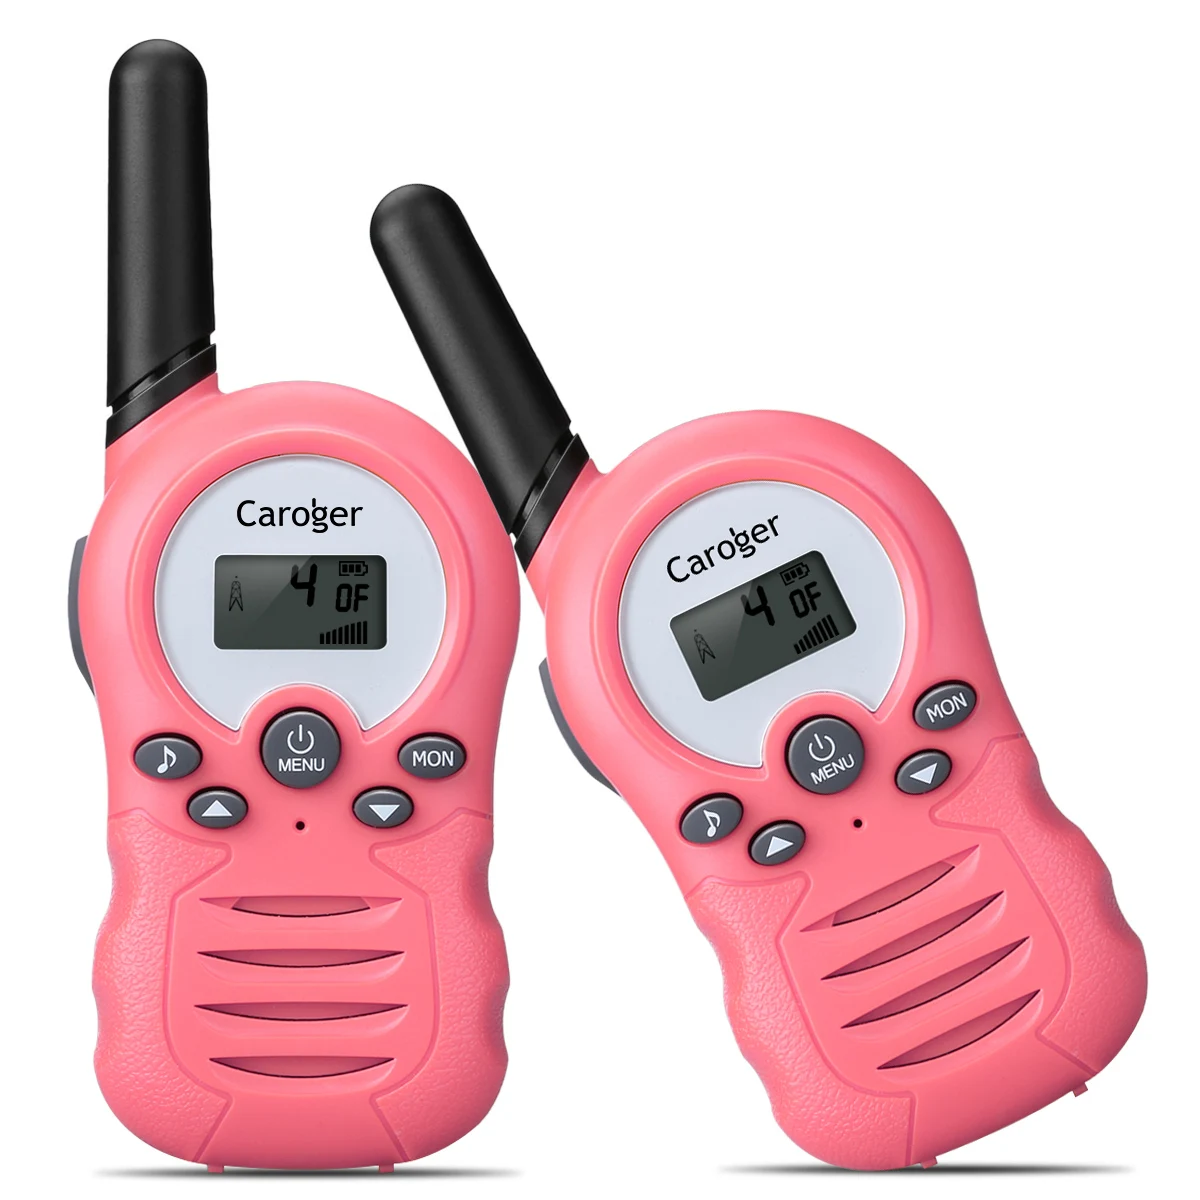 Нам Caroger CR388A лицензий 8 канал Walkie Talkie PMR446MHZ двухстороннее радио до 3300 метров 2 км переговорные из 2 предметов/упаковка - Цвет: Light Pink